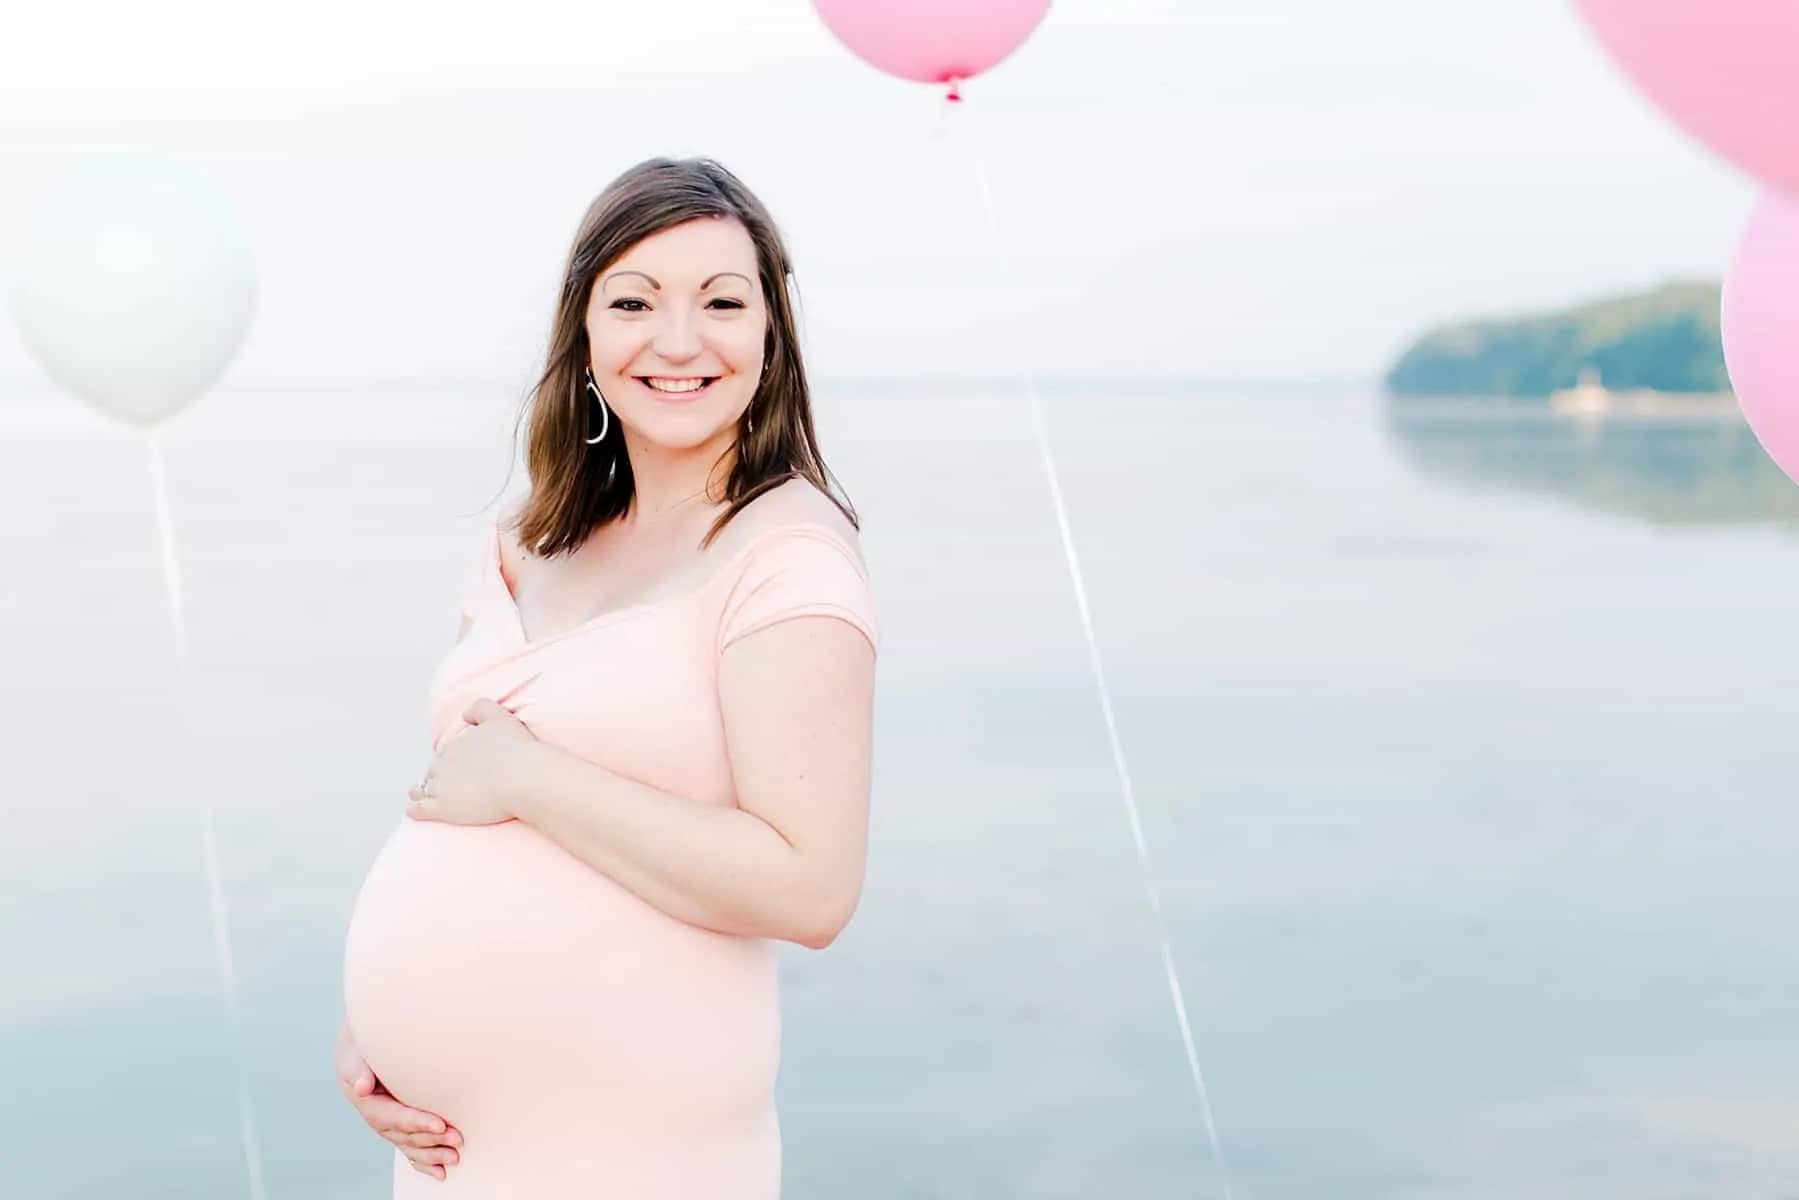 Maternity Photography Stafford Va